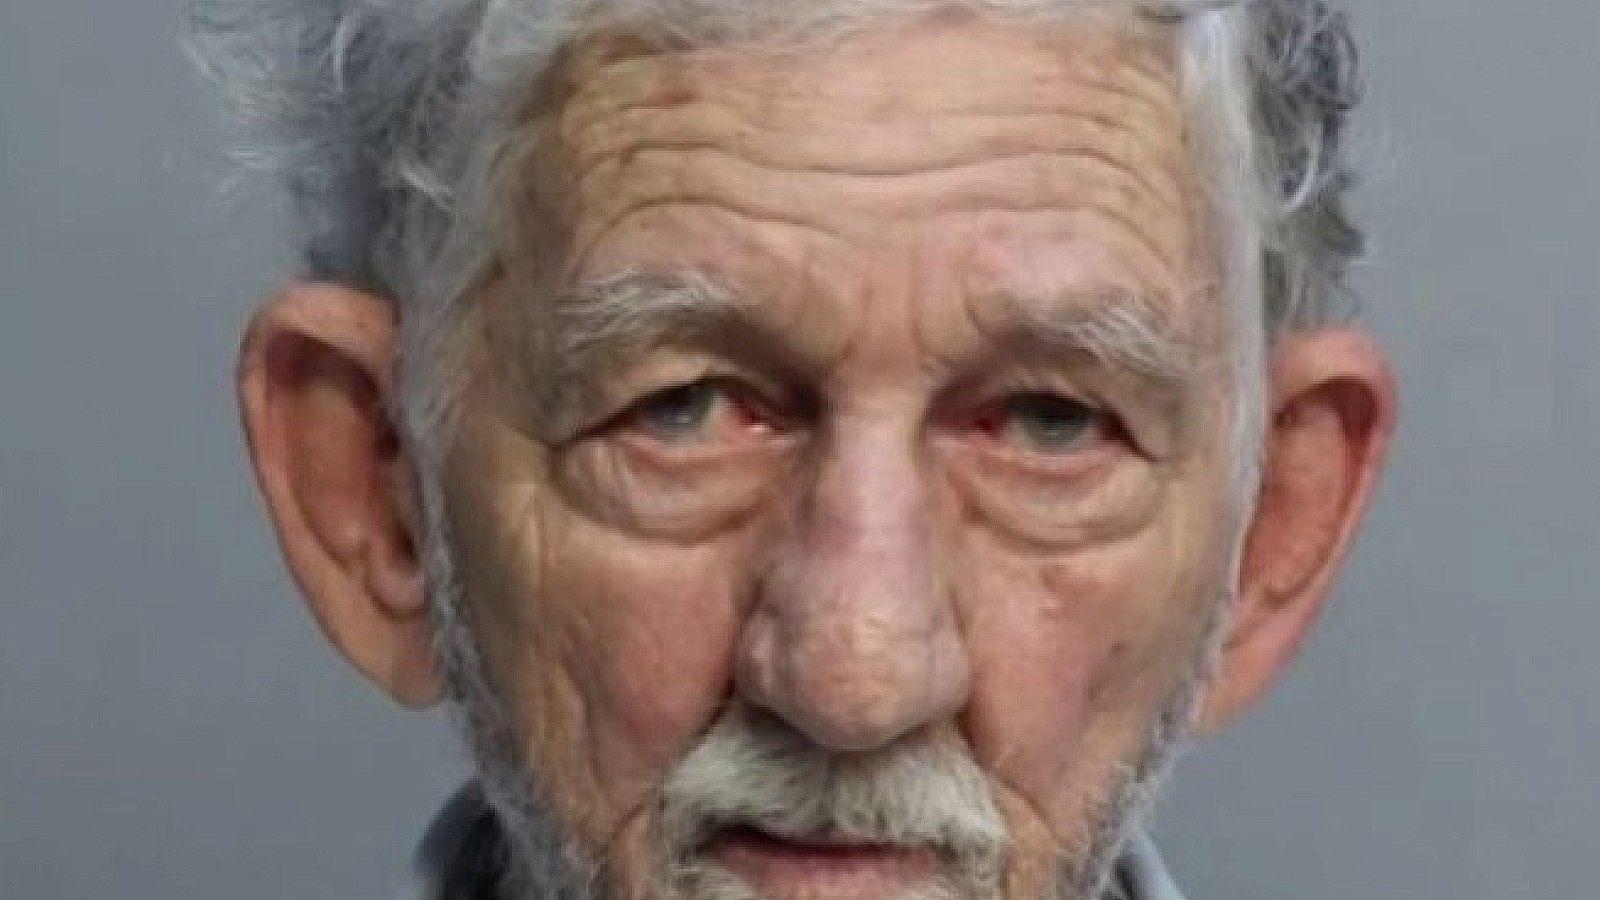 Lázaro Santana, hombre de 80 años, compareció en corte acusado de dos asesinatos.